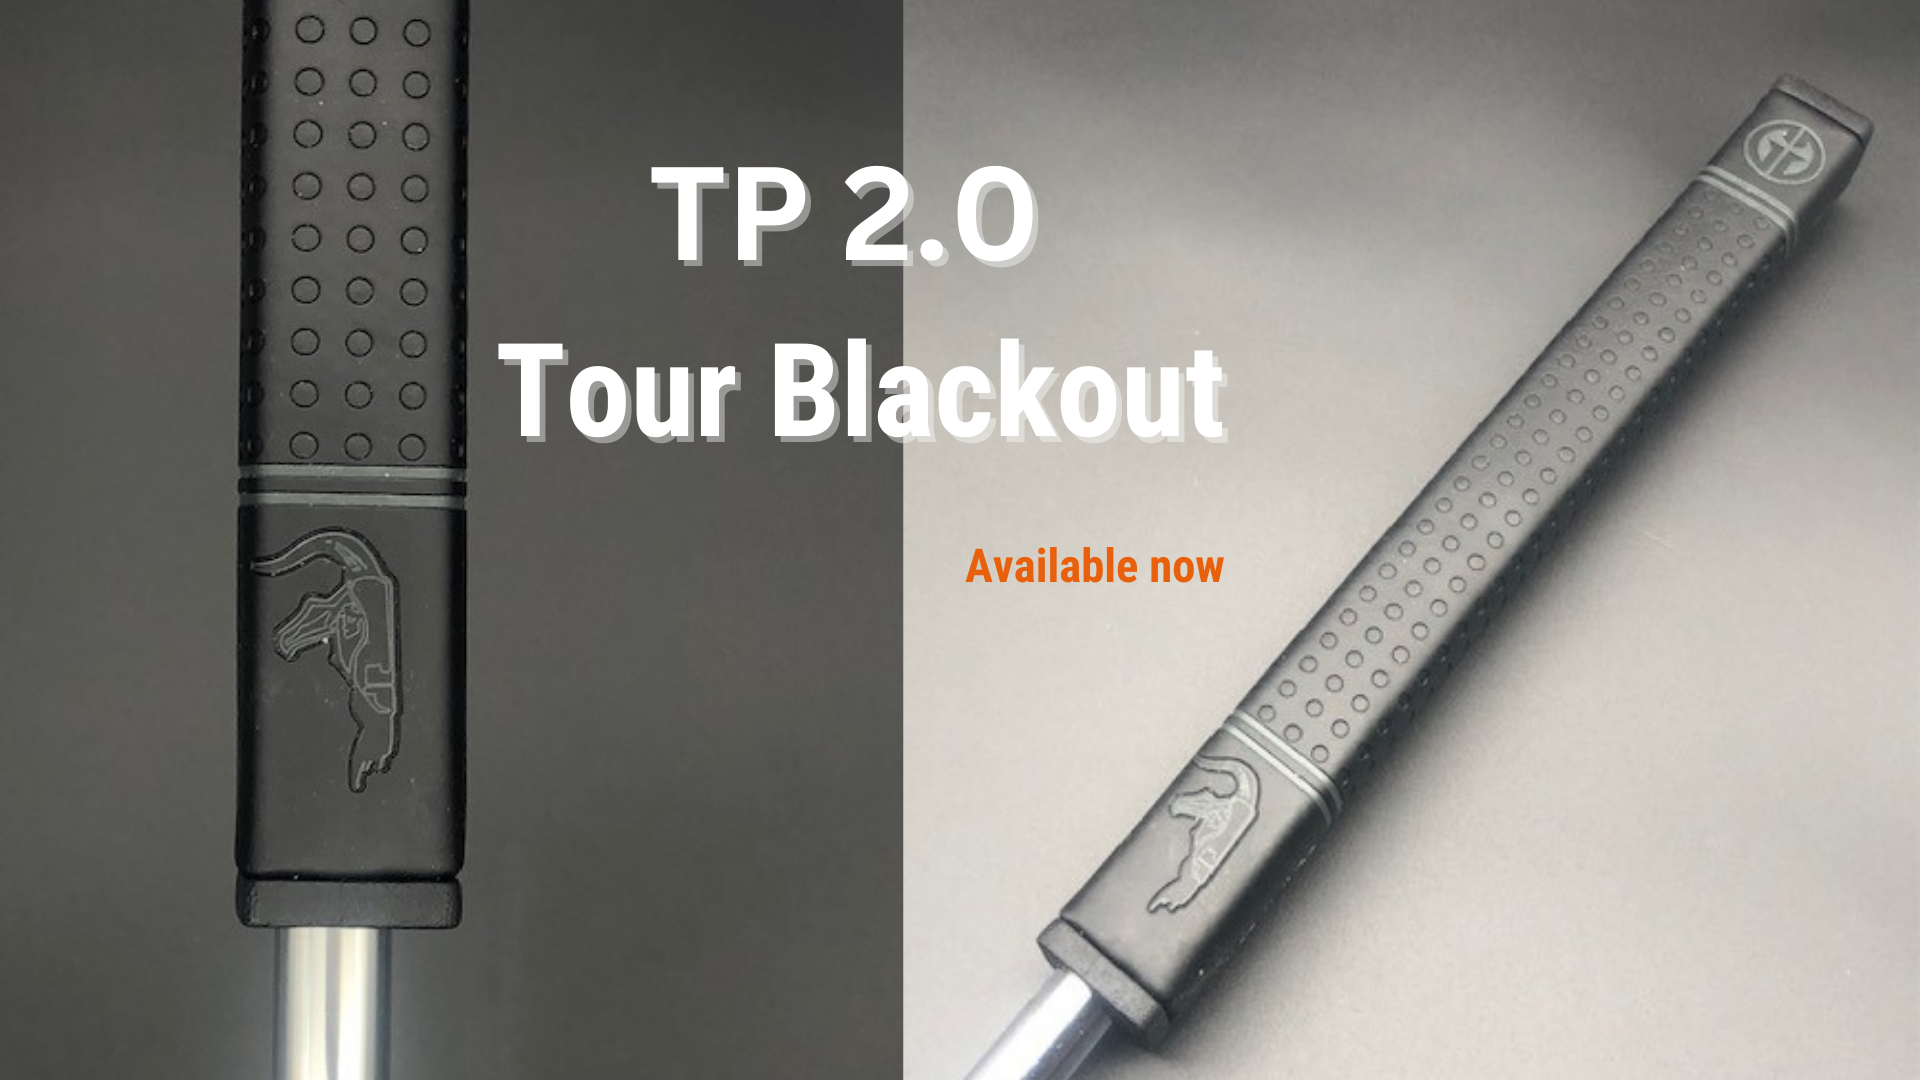 TP 2.0 Tour Blackout Launches